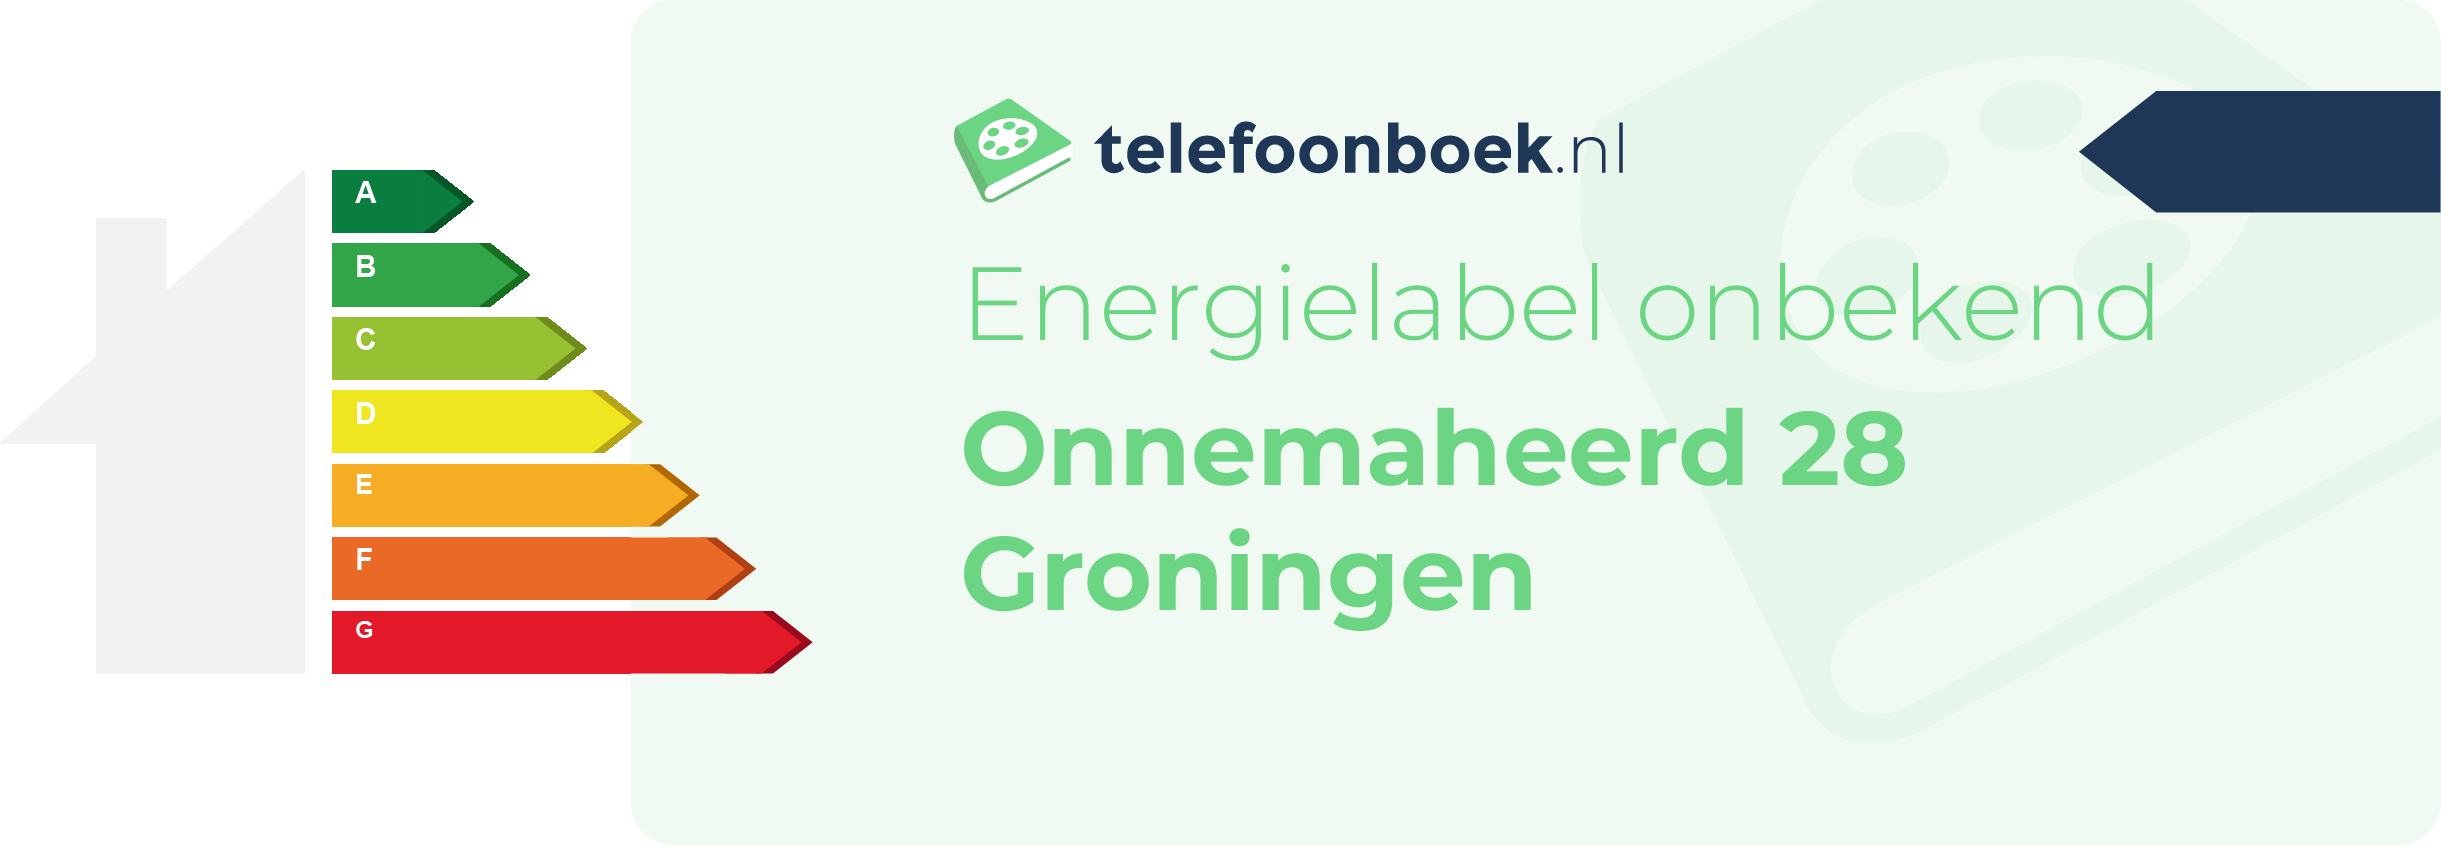 Energielabel Onnemaheerd 28 Groningen